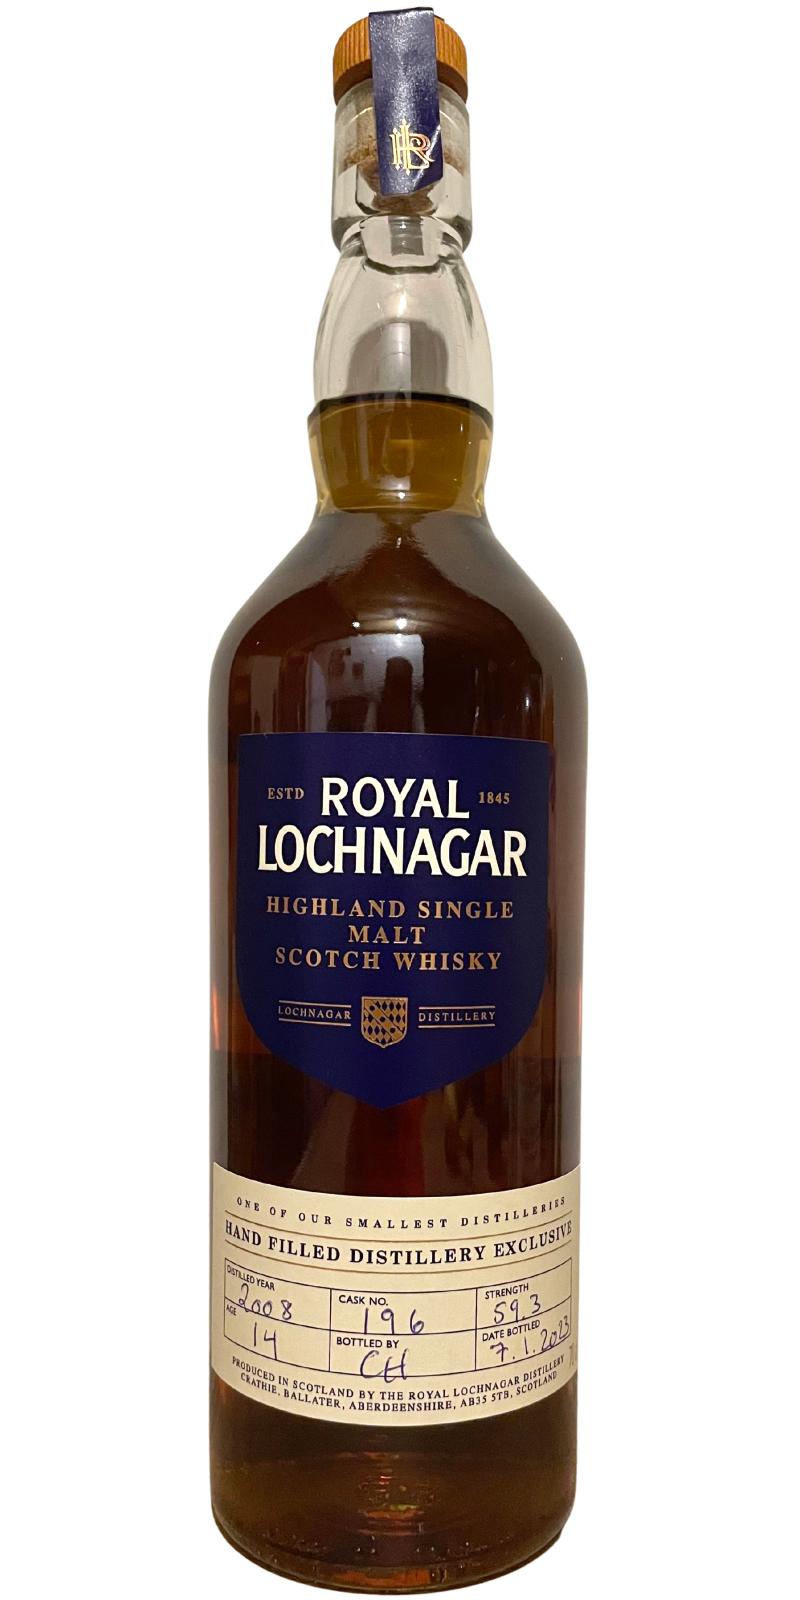 Royal Lochnagar 2008 Hand Filled Distillery Exclusive 59.3% 700ml